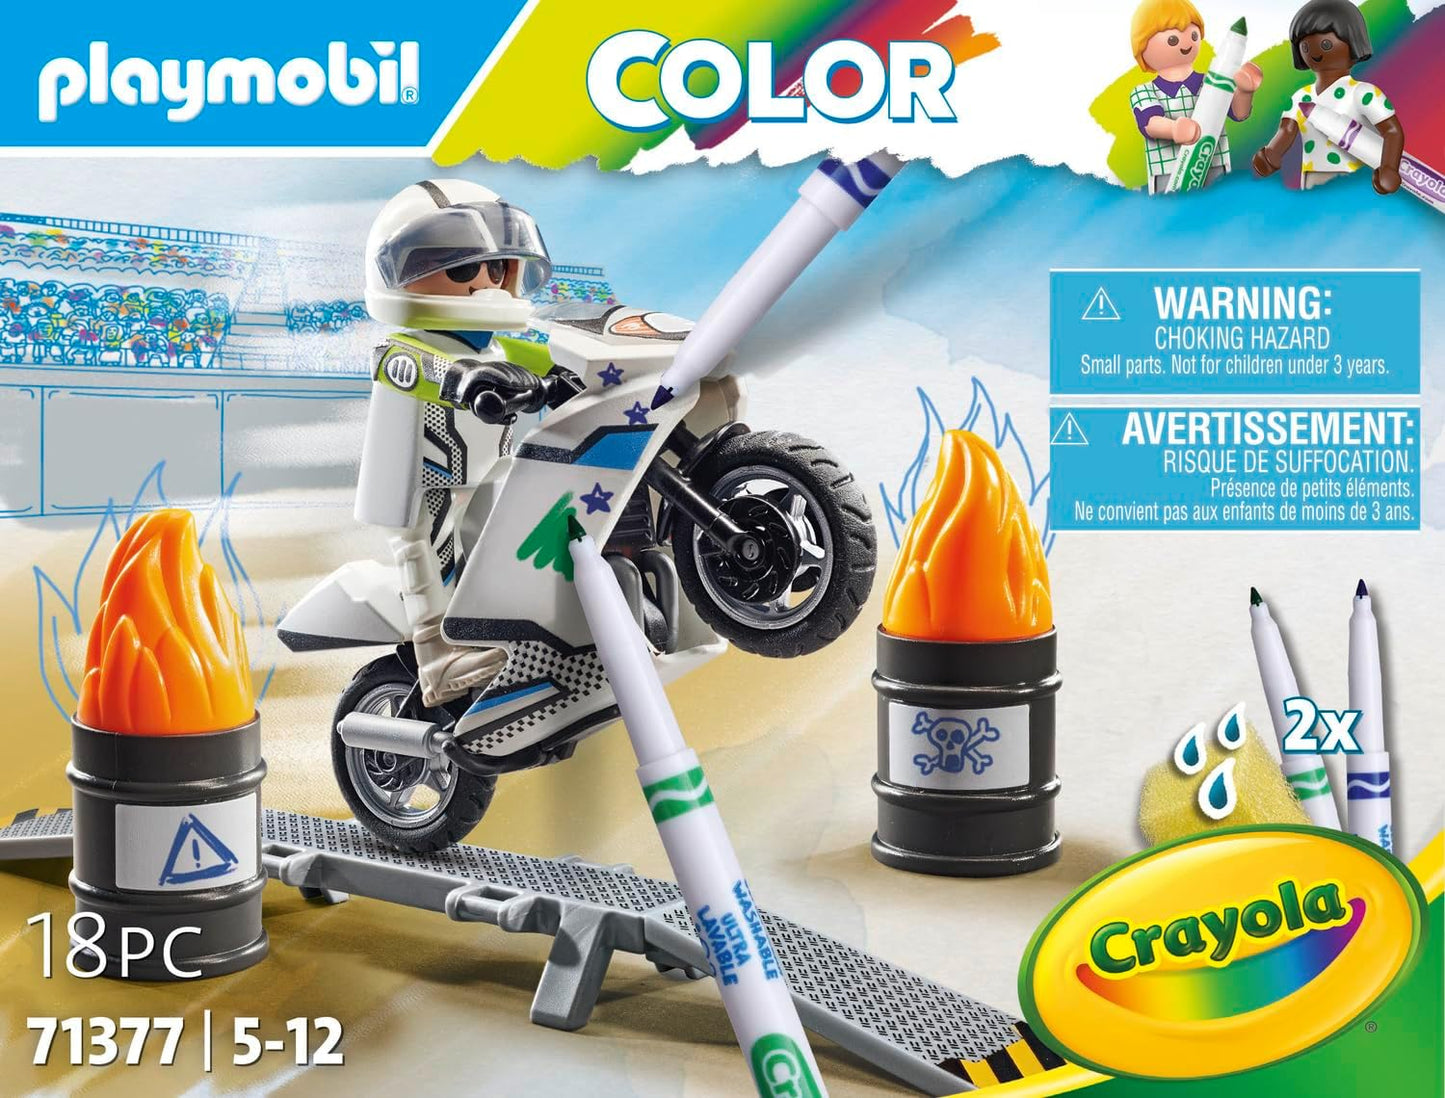 Playmobil 71377 Color Motorbike, design de veículo criativo com marcadores solúveis em água e acessórios para acrobacias incríveis, dramatizações divertidas e imaginativas, conjuntos de jogos artísticos adequados para crianças a partir de 5 anos